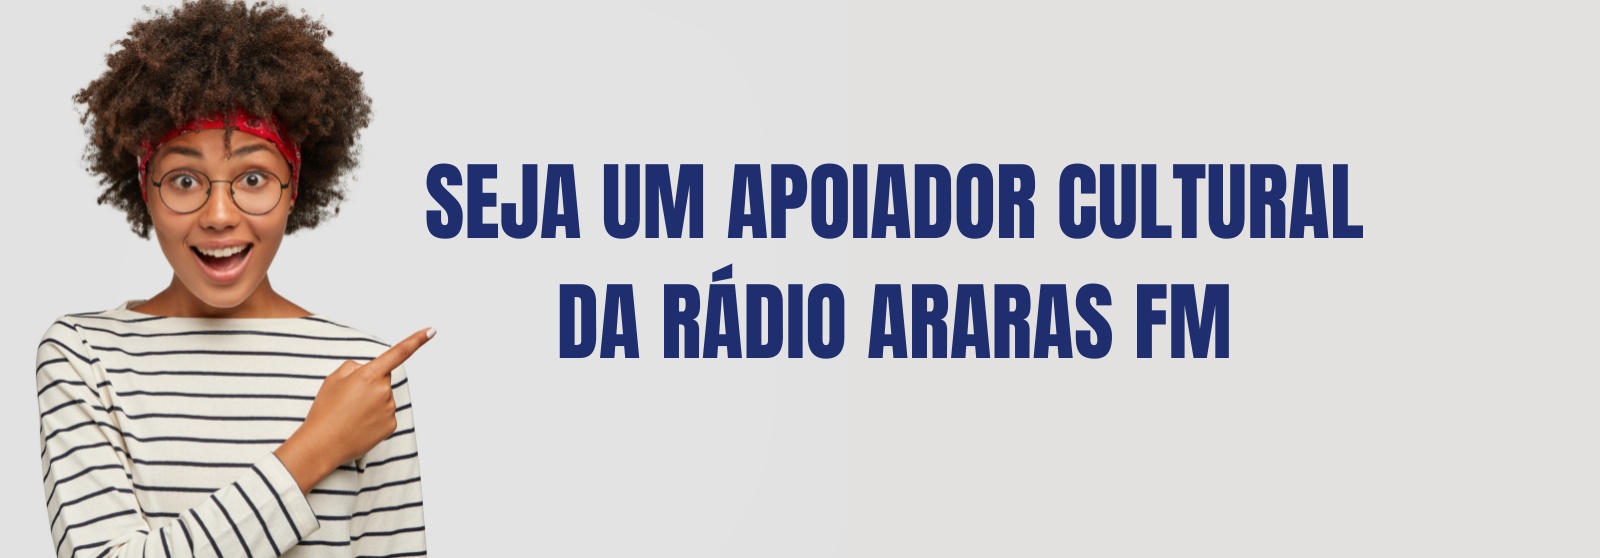 Rádio Araras FM 107,7